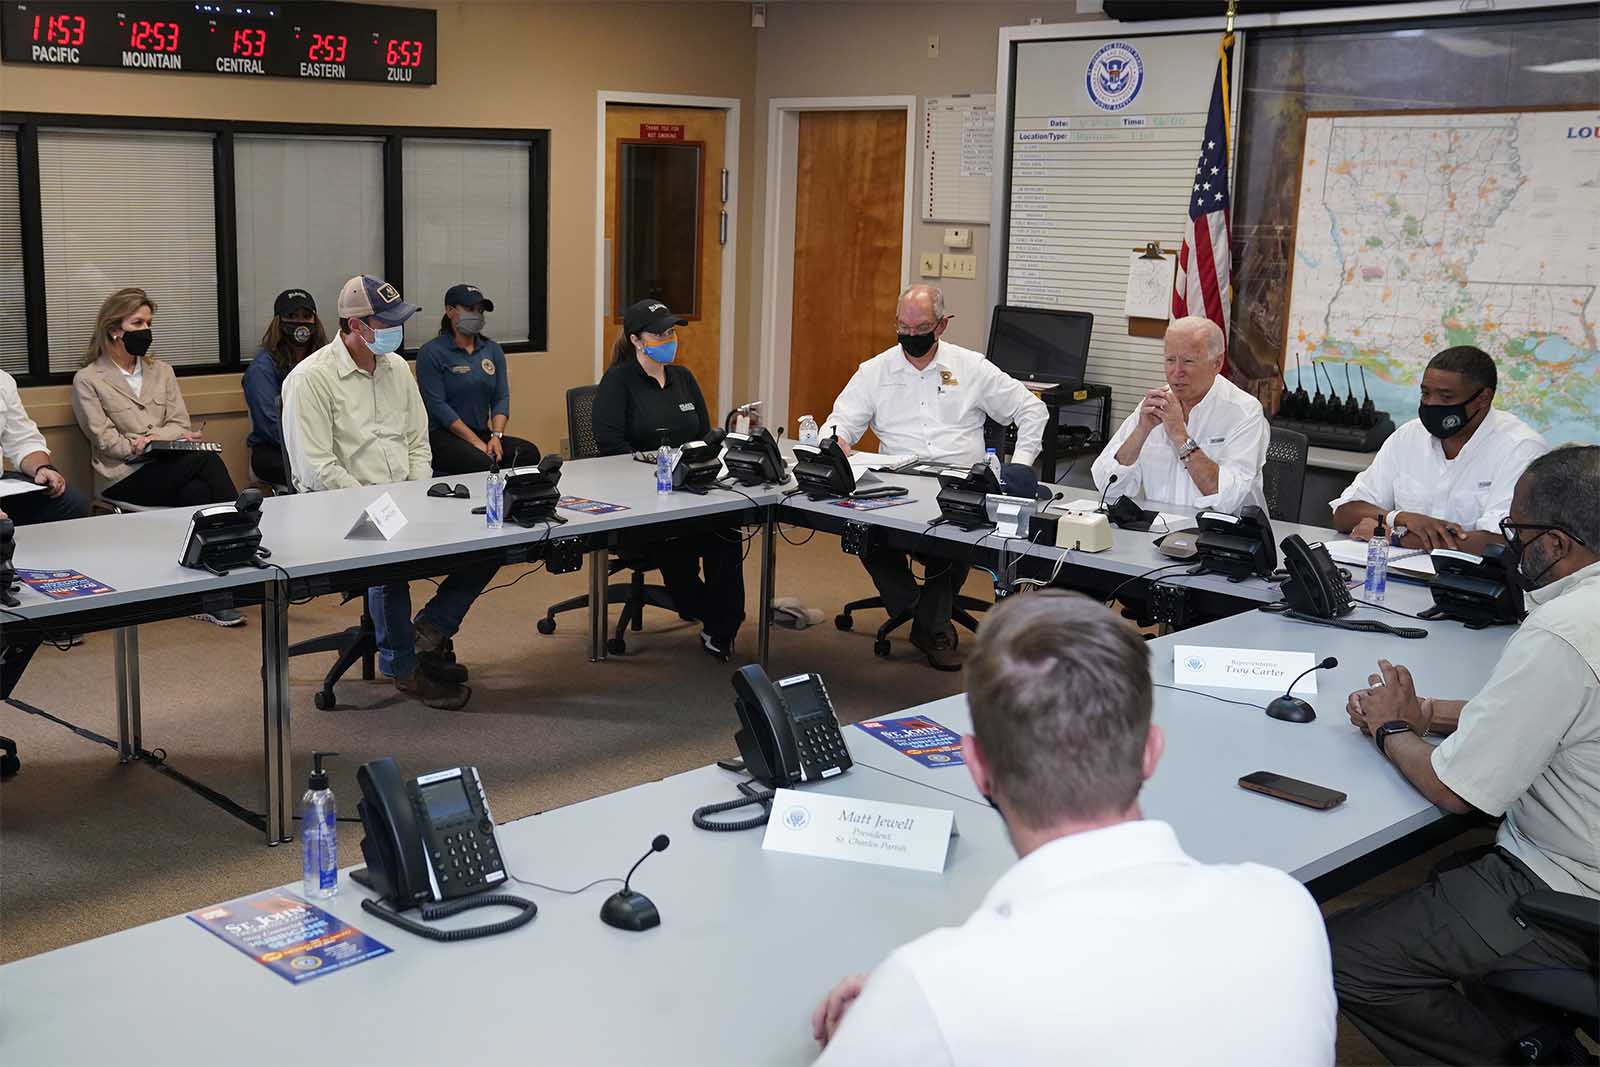 הנשיא ג'ו ביידן משתתף בתדרוך אודות התגובה לנזקים שנגרמו על ידי הוריקן אידה, במרכז הפעולות החירום של סנט ג'ון פאריש, ביום שישי, 3 בספטמבר, 2021, בלאפלאס (צילום: AP Photo/Evan Vucci)